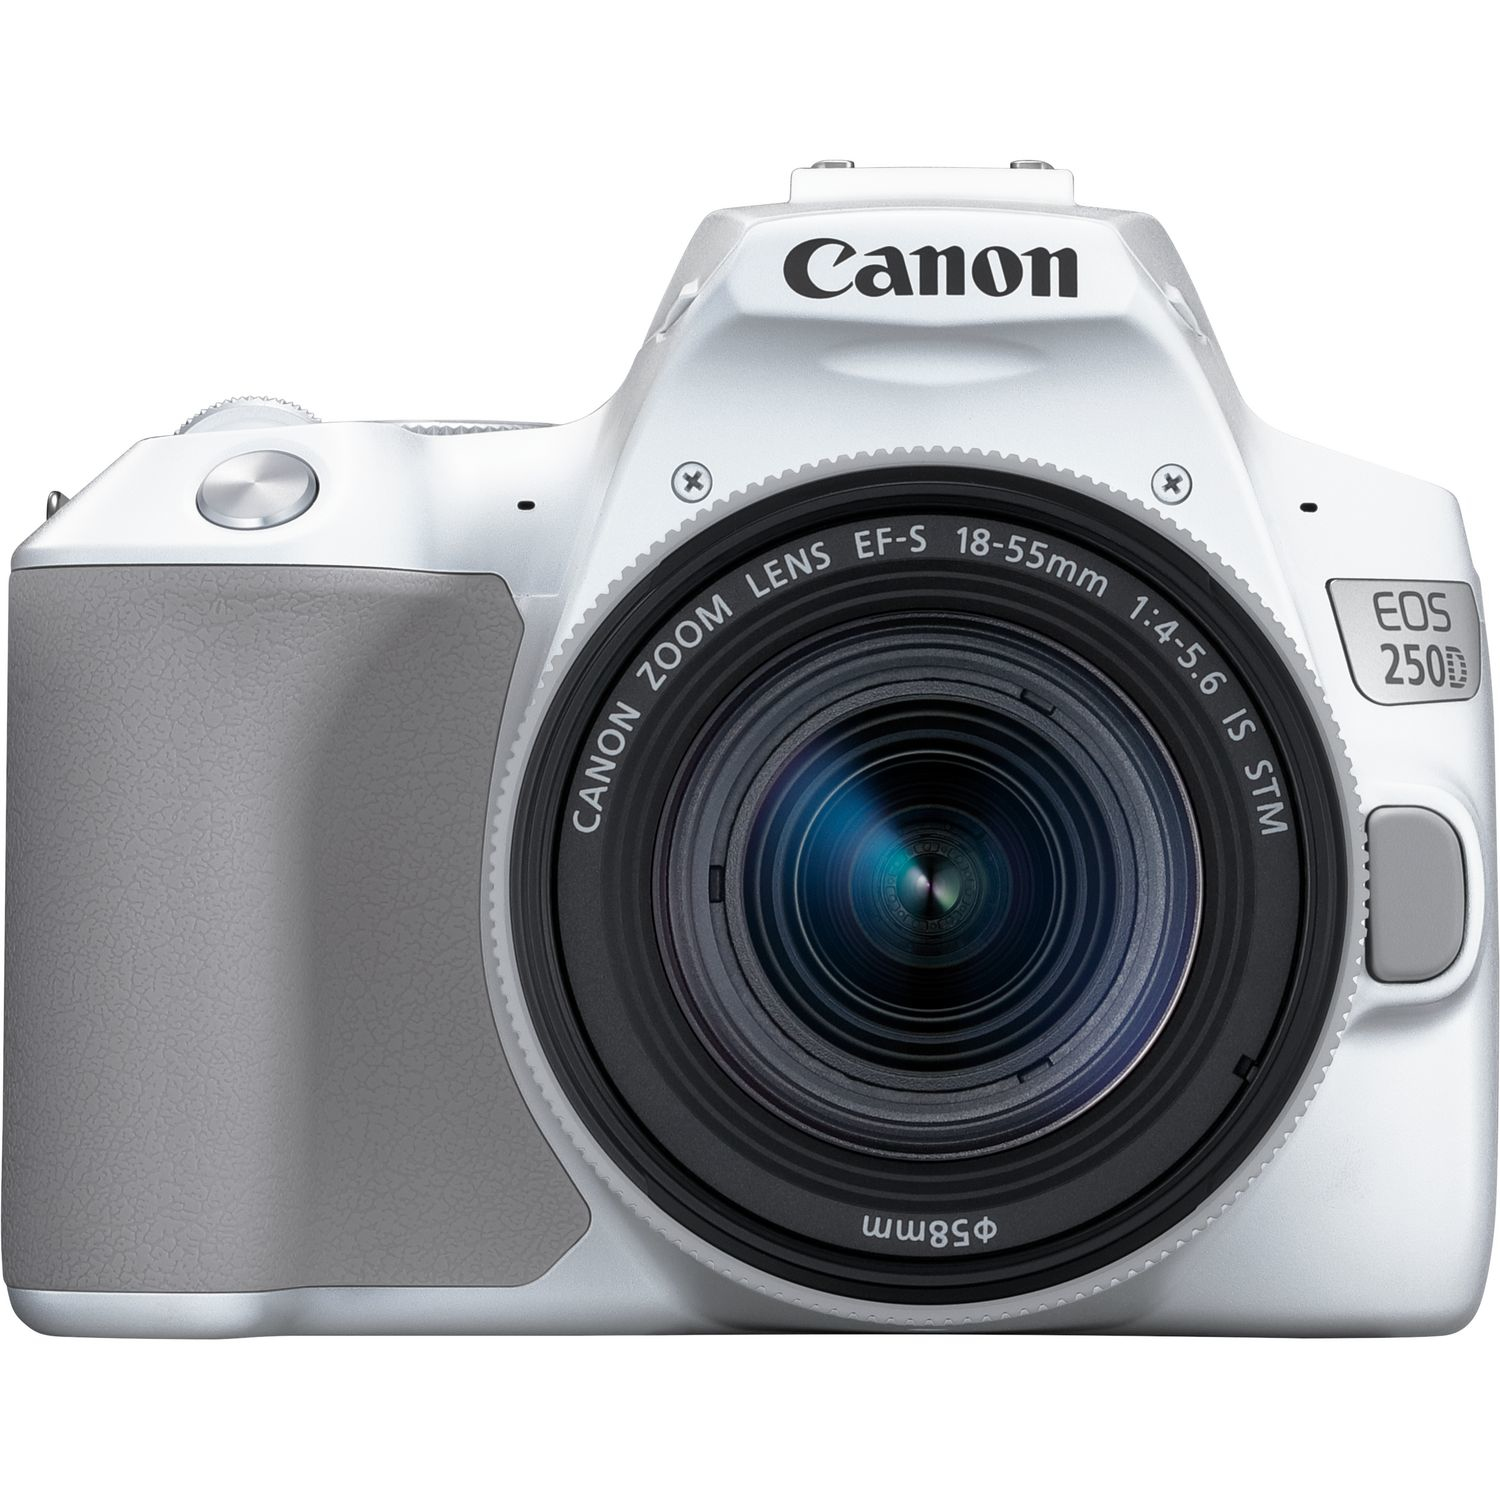 Canon EOS 250D + EF-S 18-55mm f/4-5.6 IS STM SLR-kamerauppsättning 24,1 MP CMOS 6000 x 4000 pixlar Vit